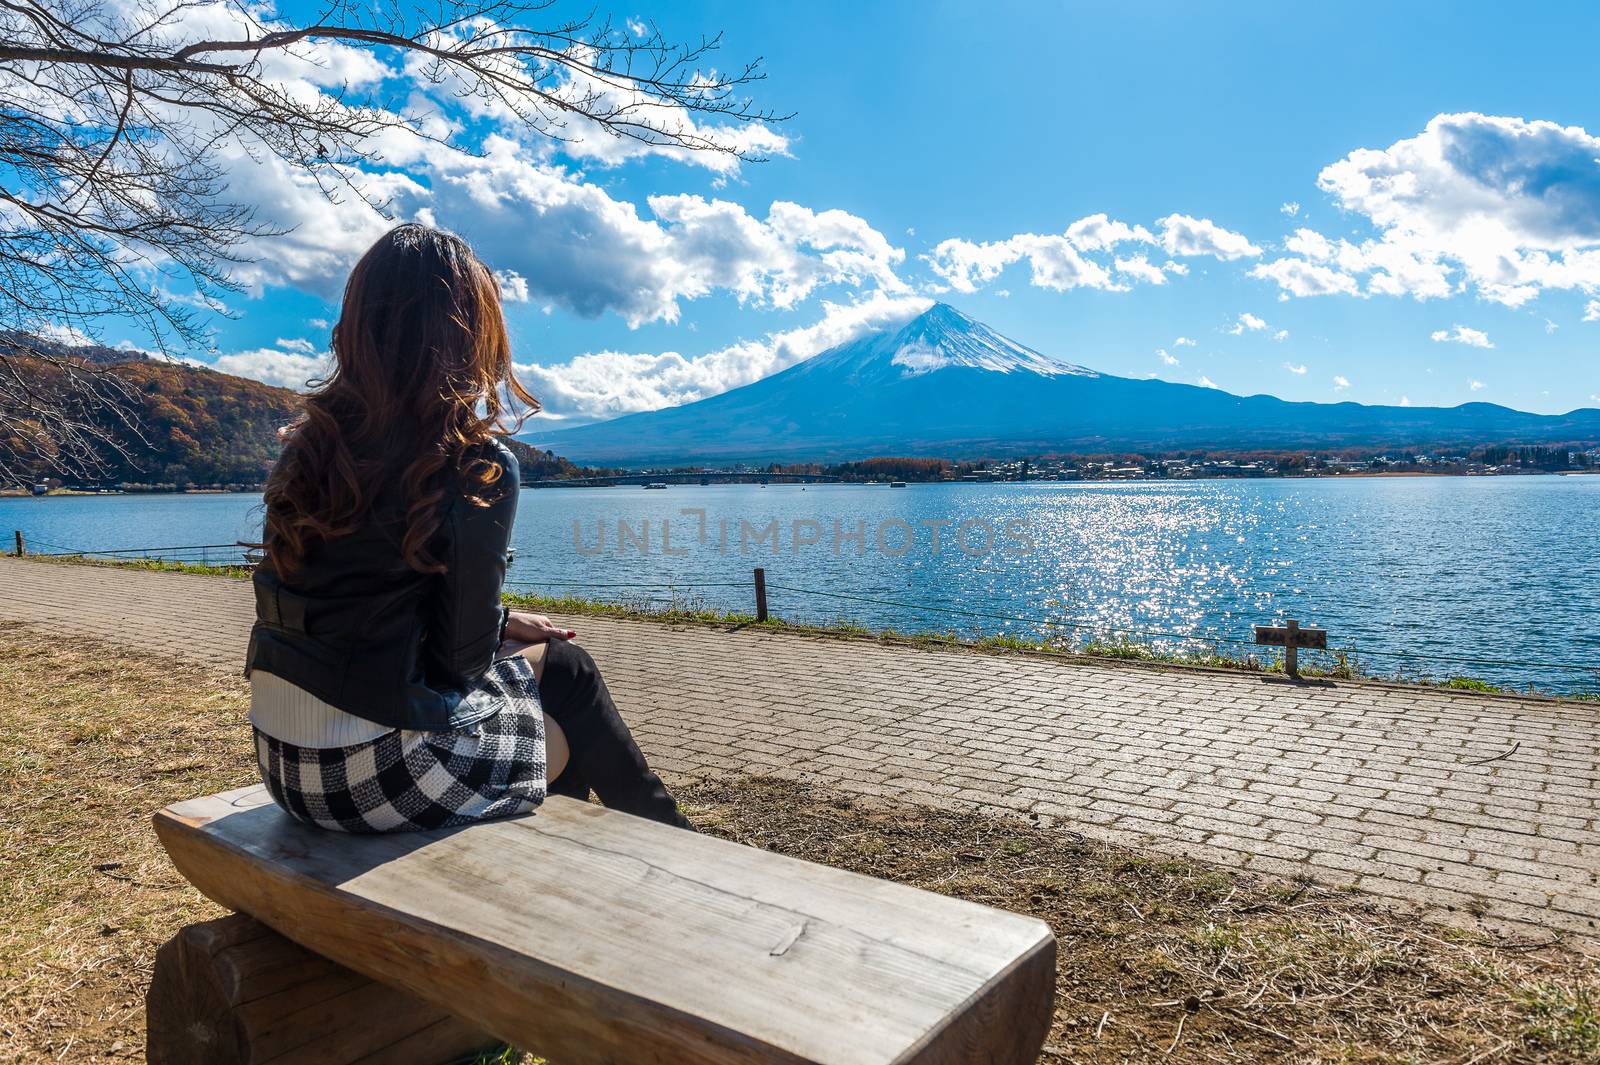 Woman looking to Fuji mountains at kawaguchiko lake, Japan.